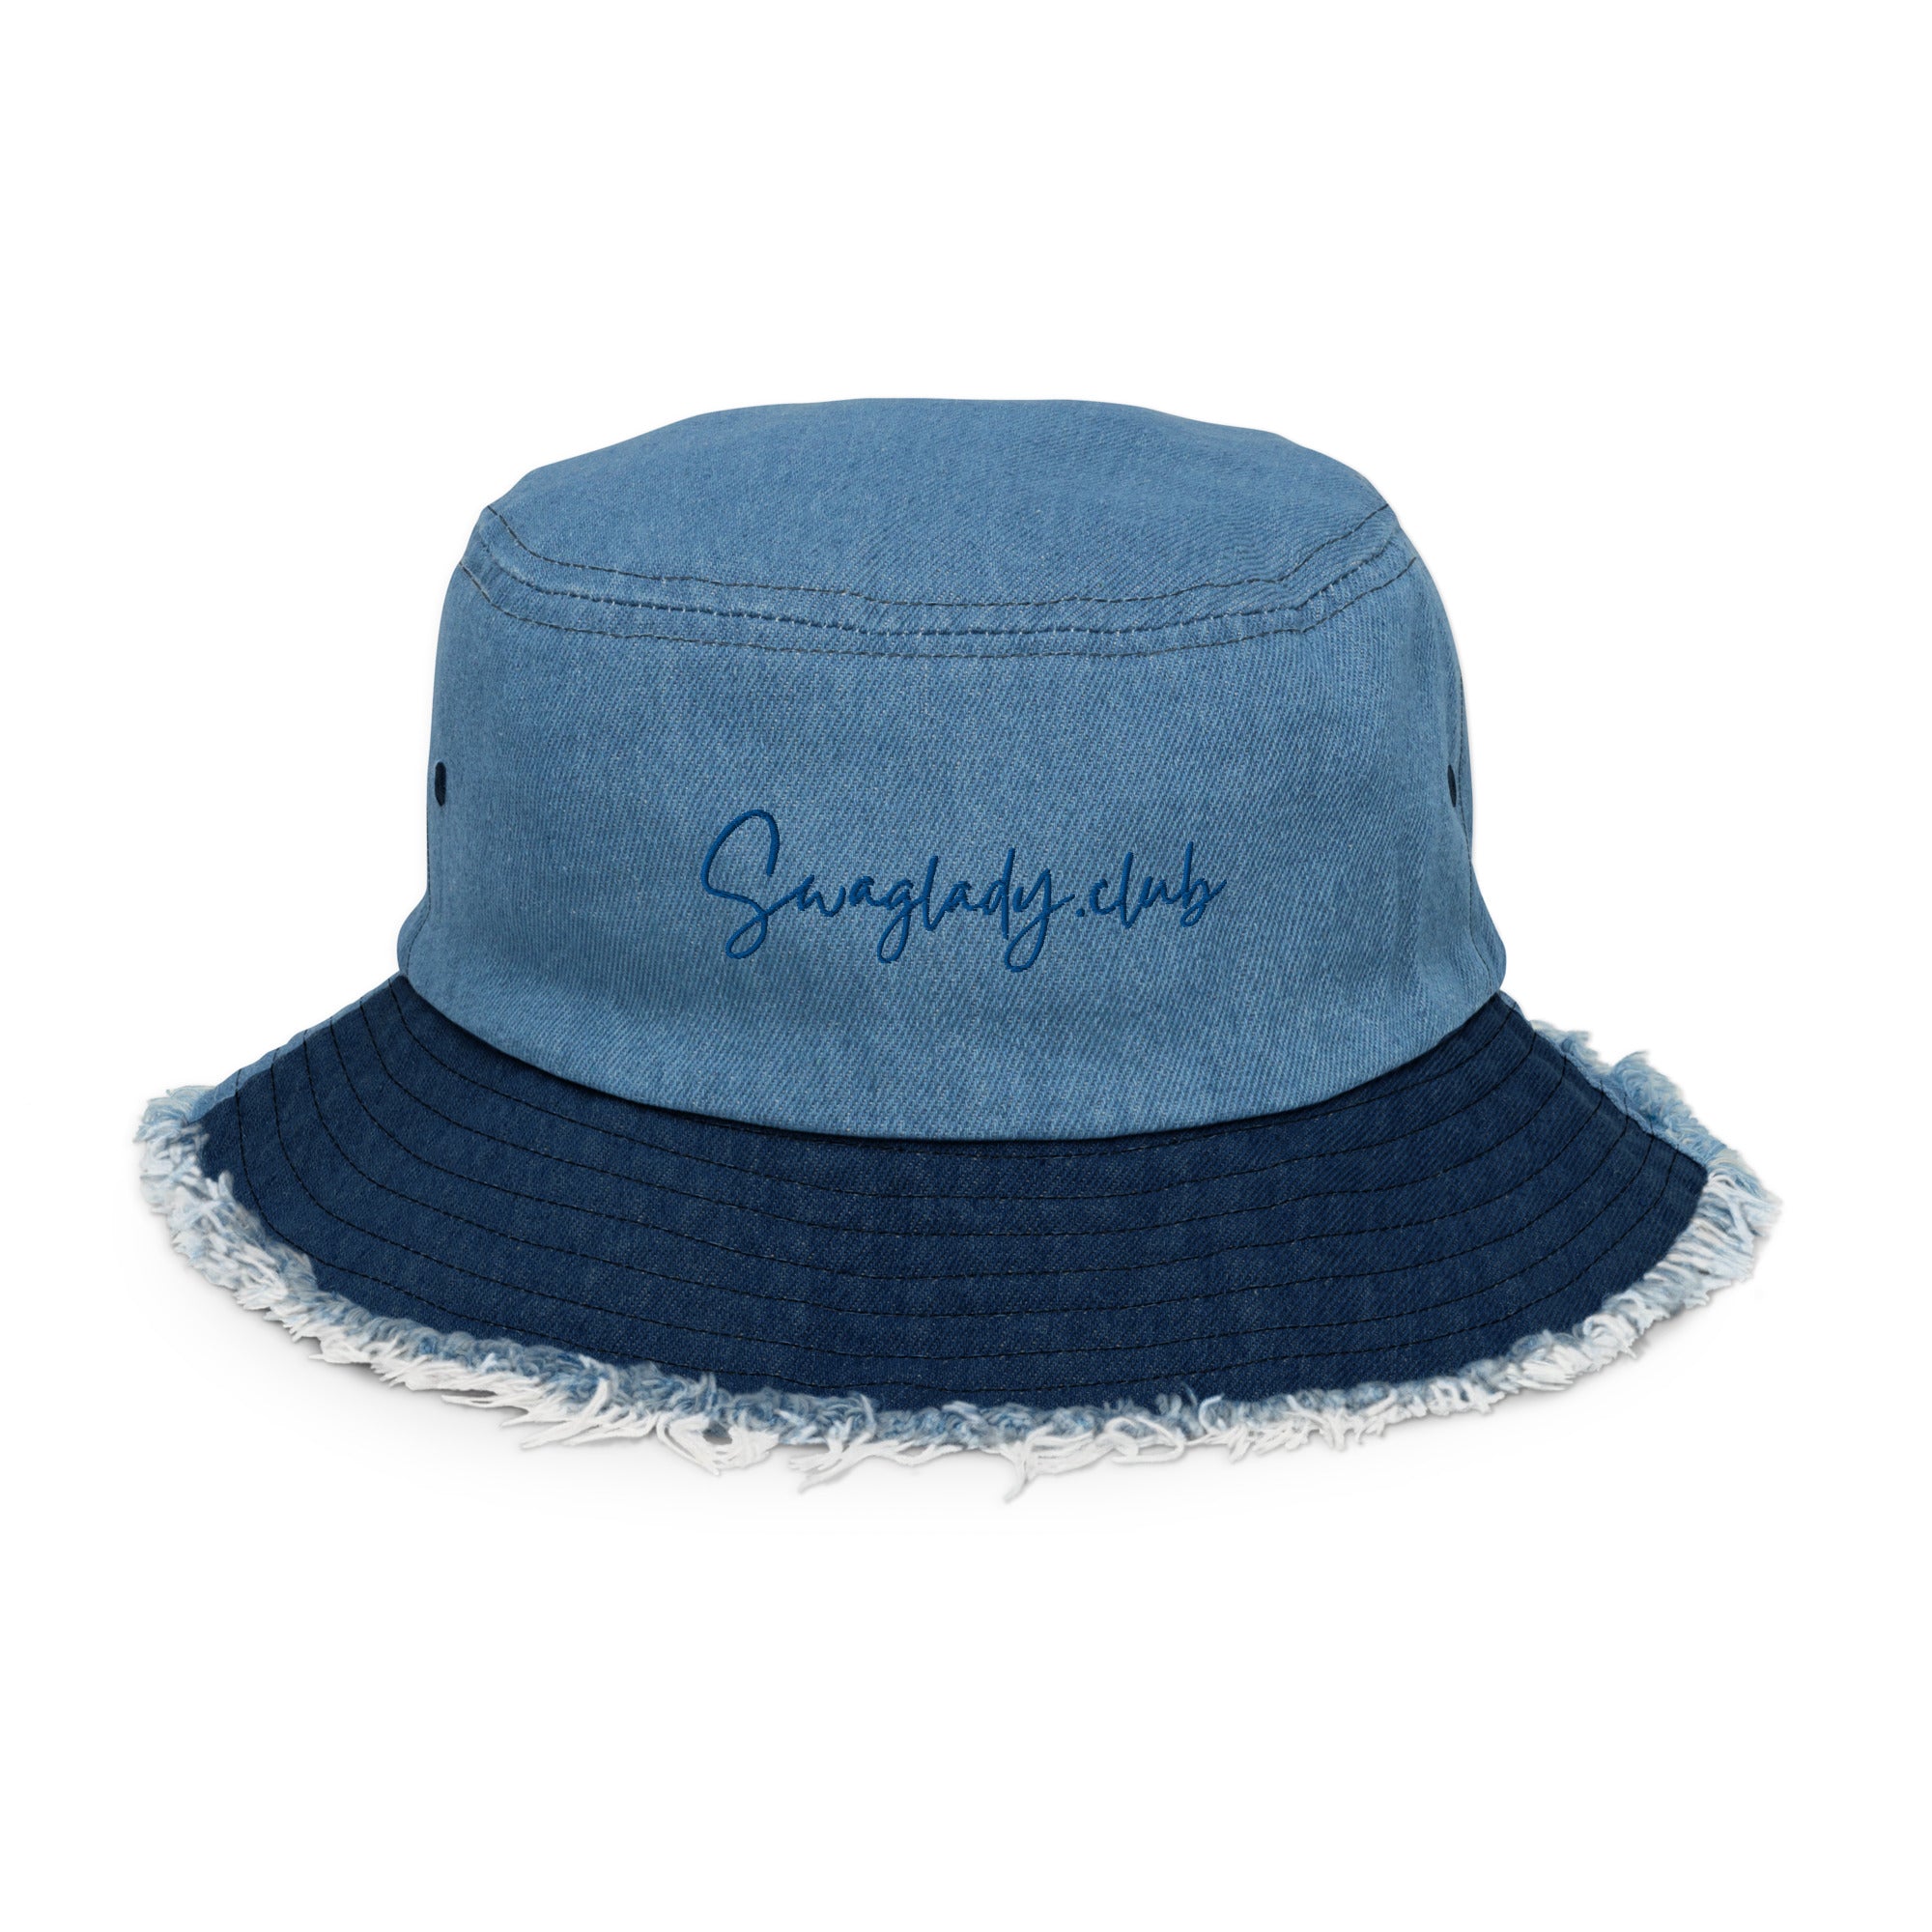 Swaglady.club Distressed denim bucket hat